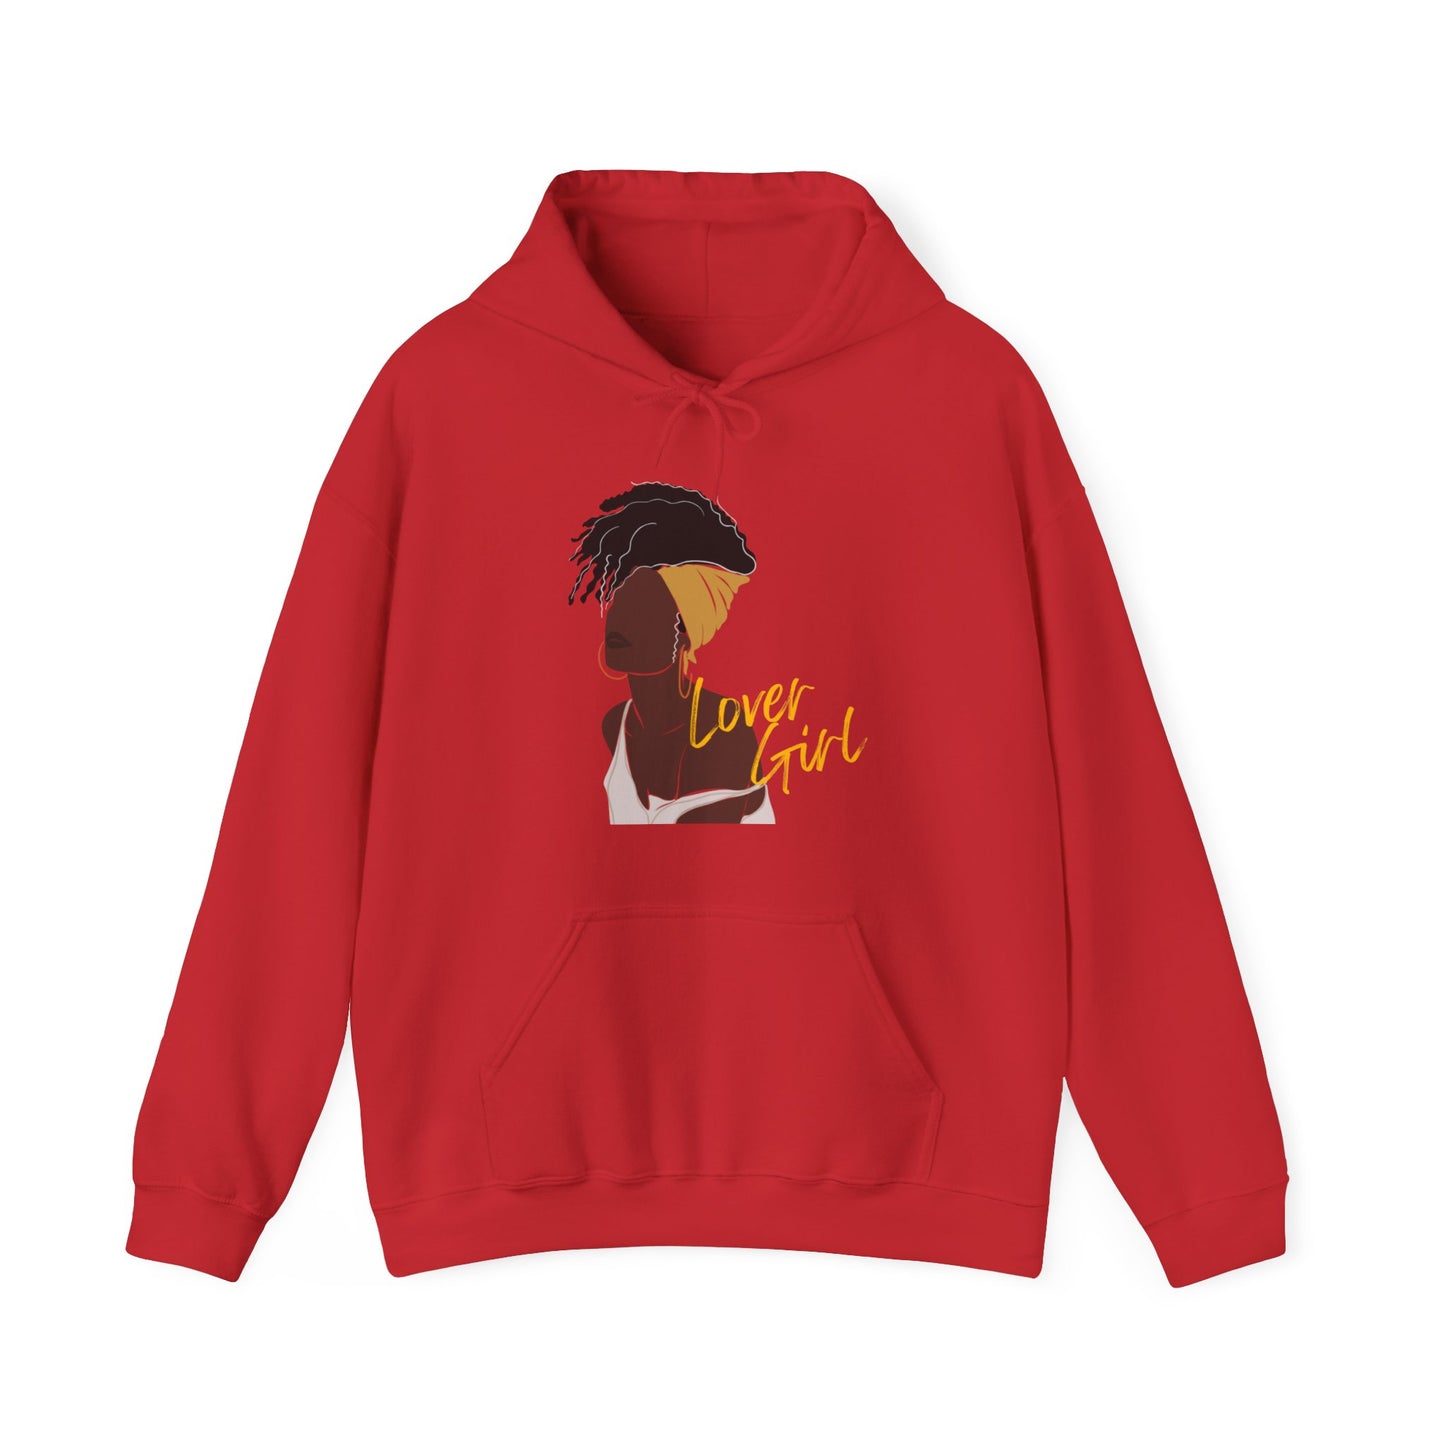 Lover Girl Hooded Sweatshirt